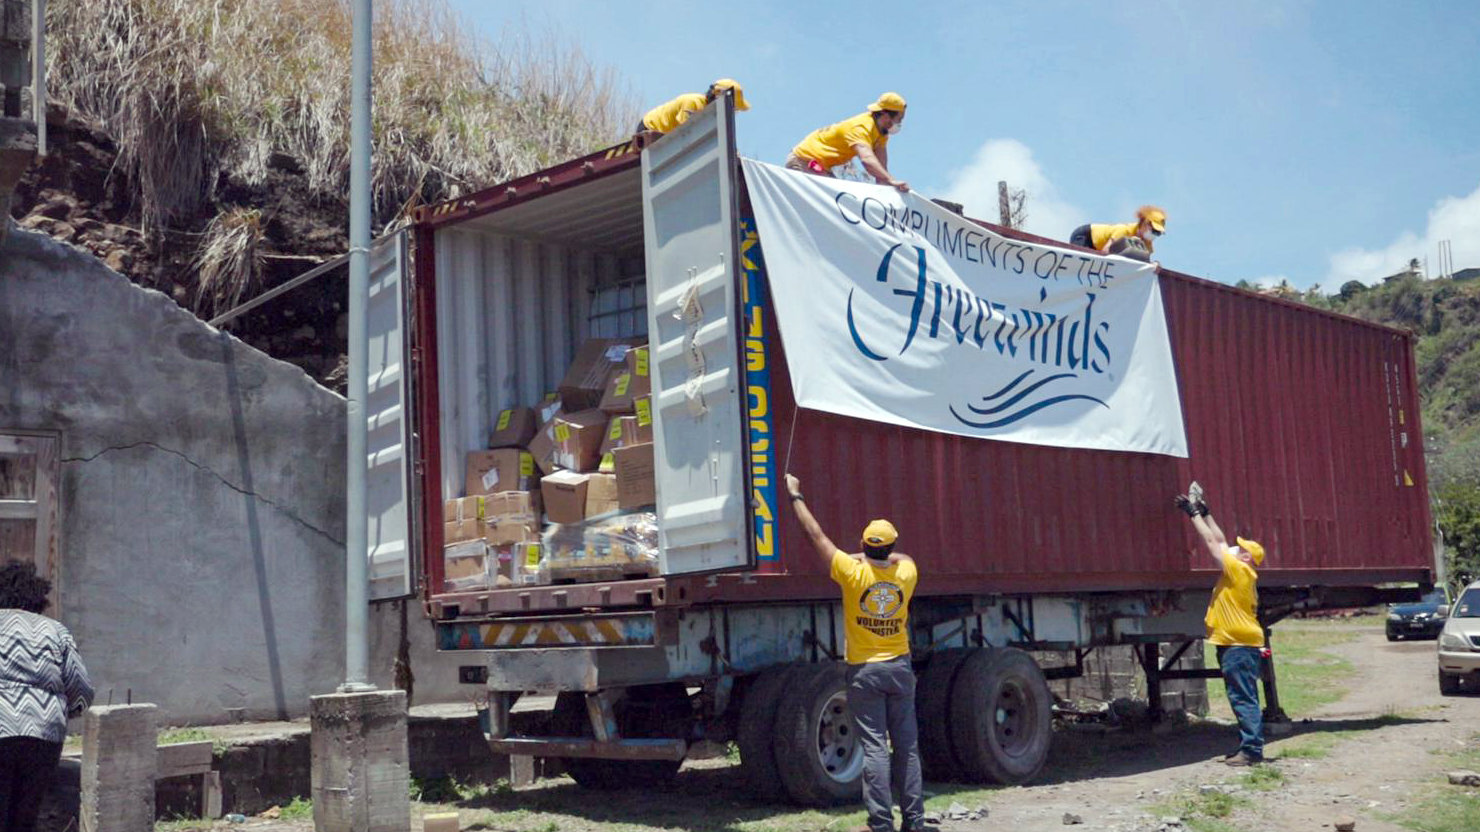 VMチームは、IASの支援によって、フリーウィンズが
島に送った必需品をコンテナから降ろします。